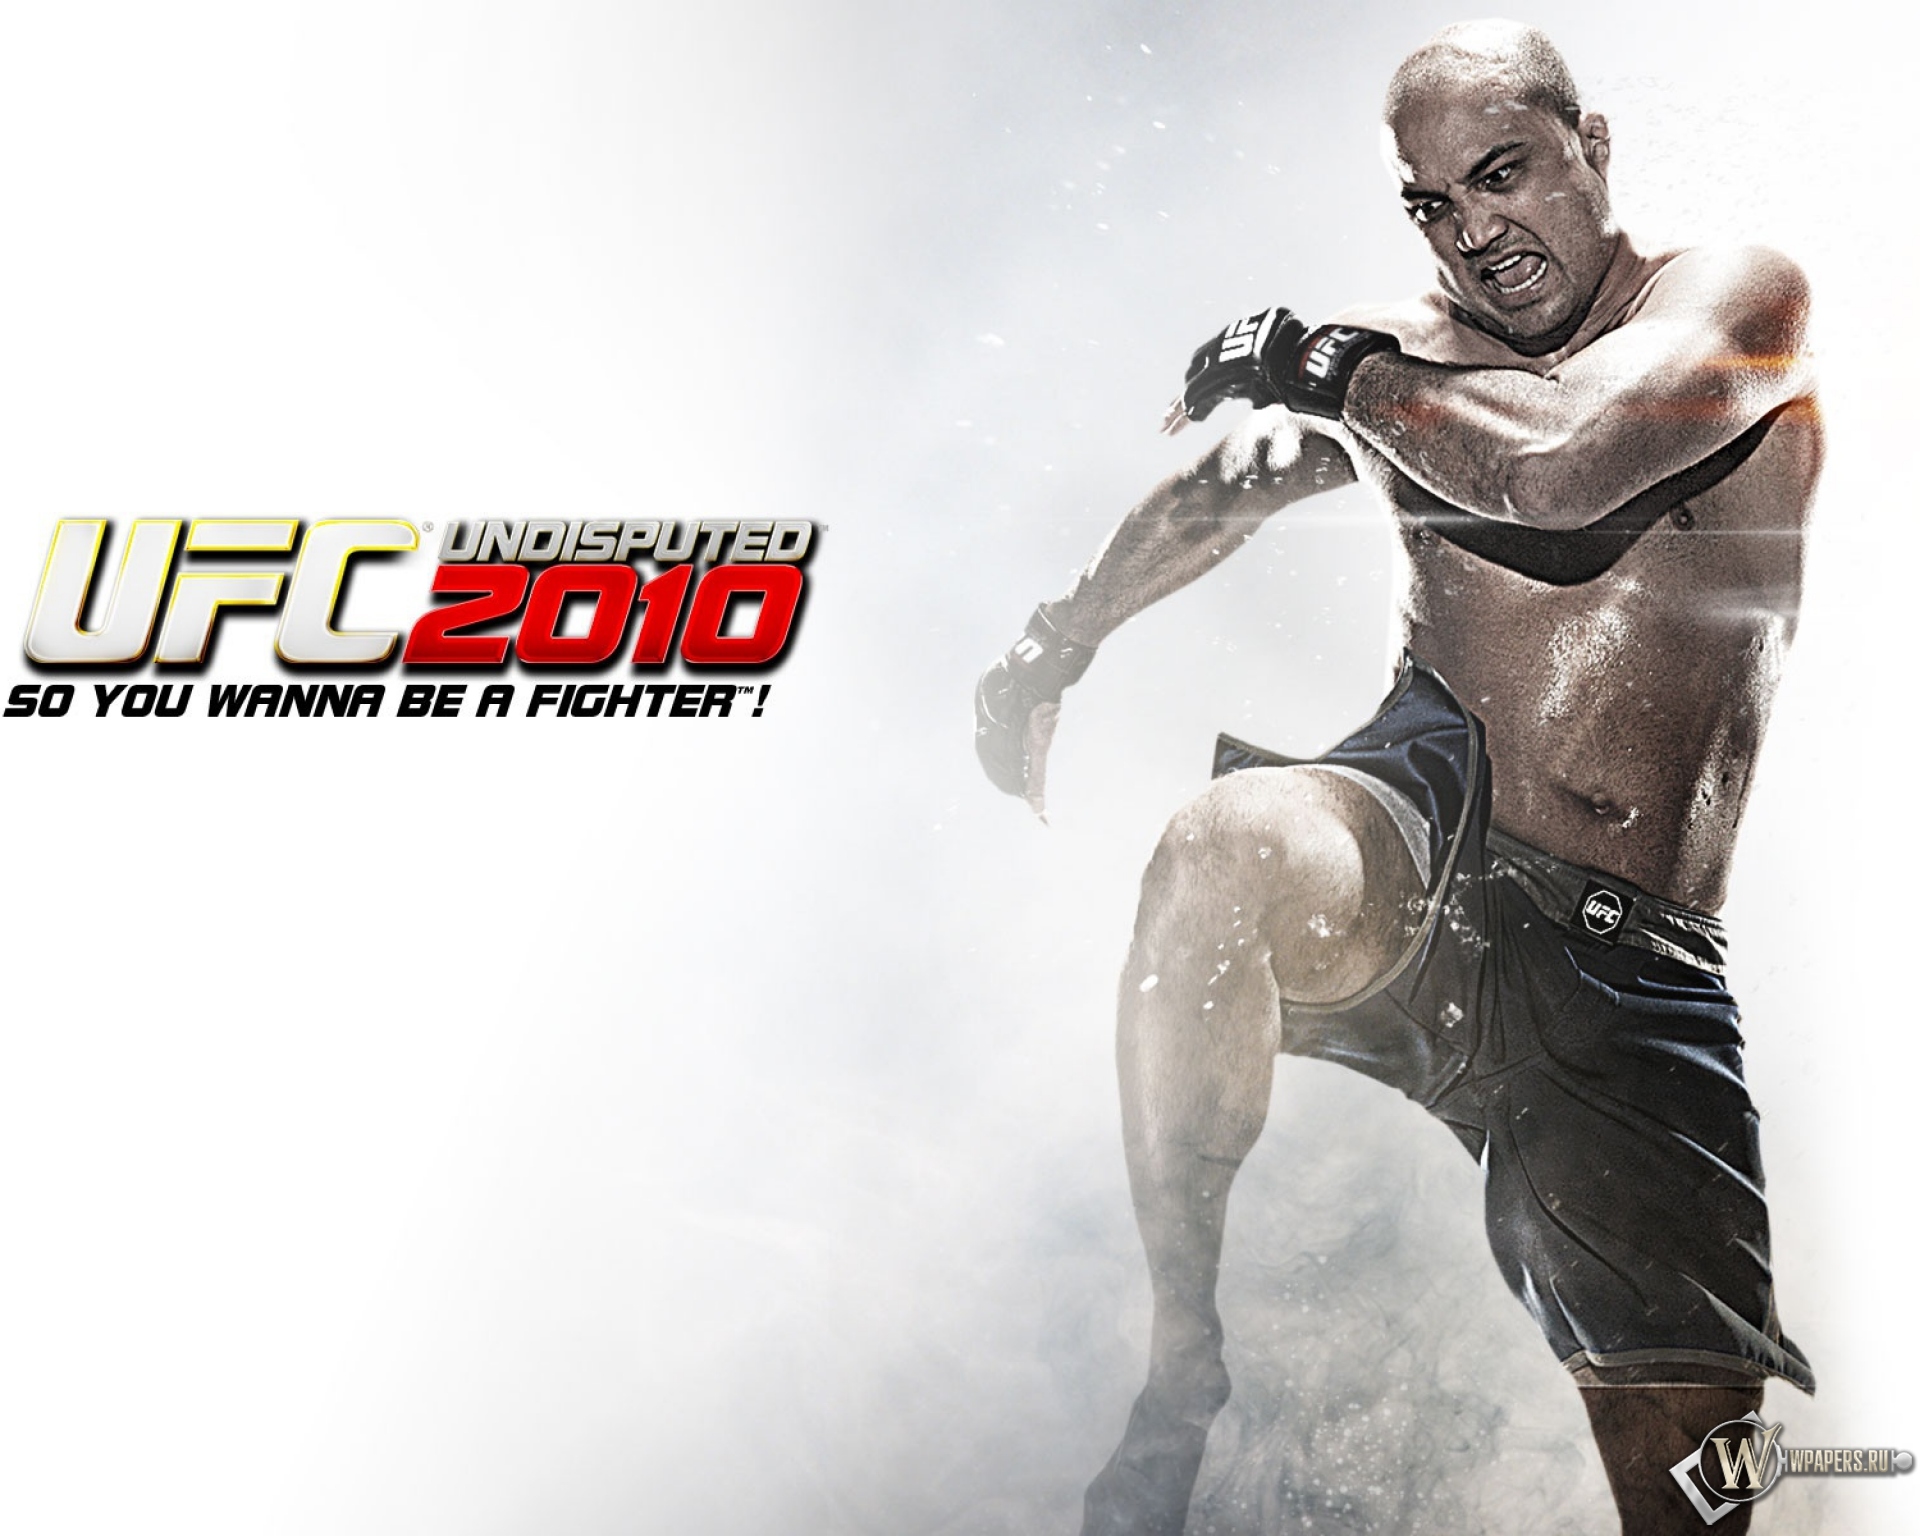 UFC 2010 1920x1536